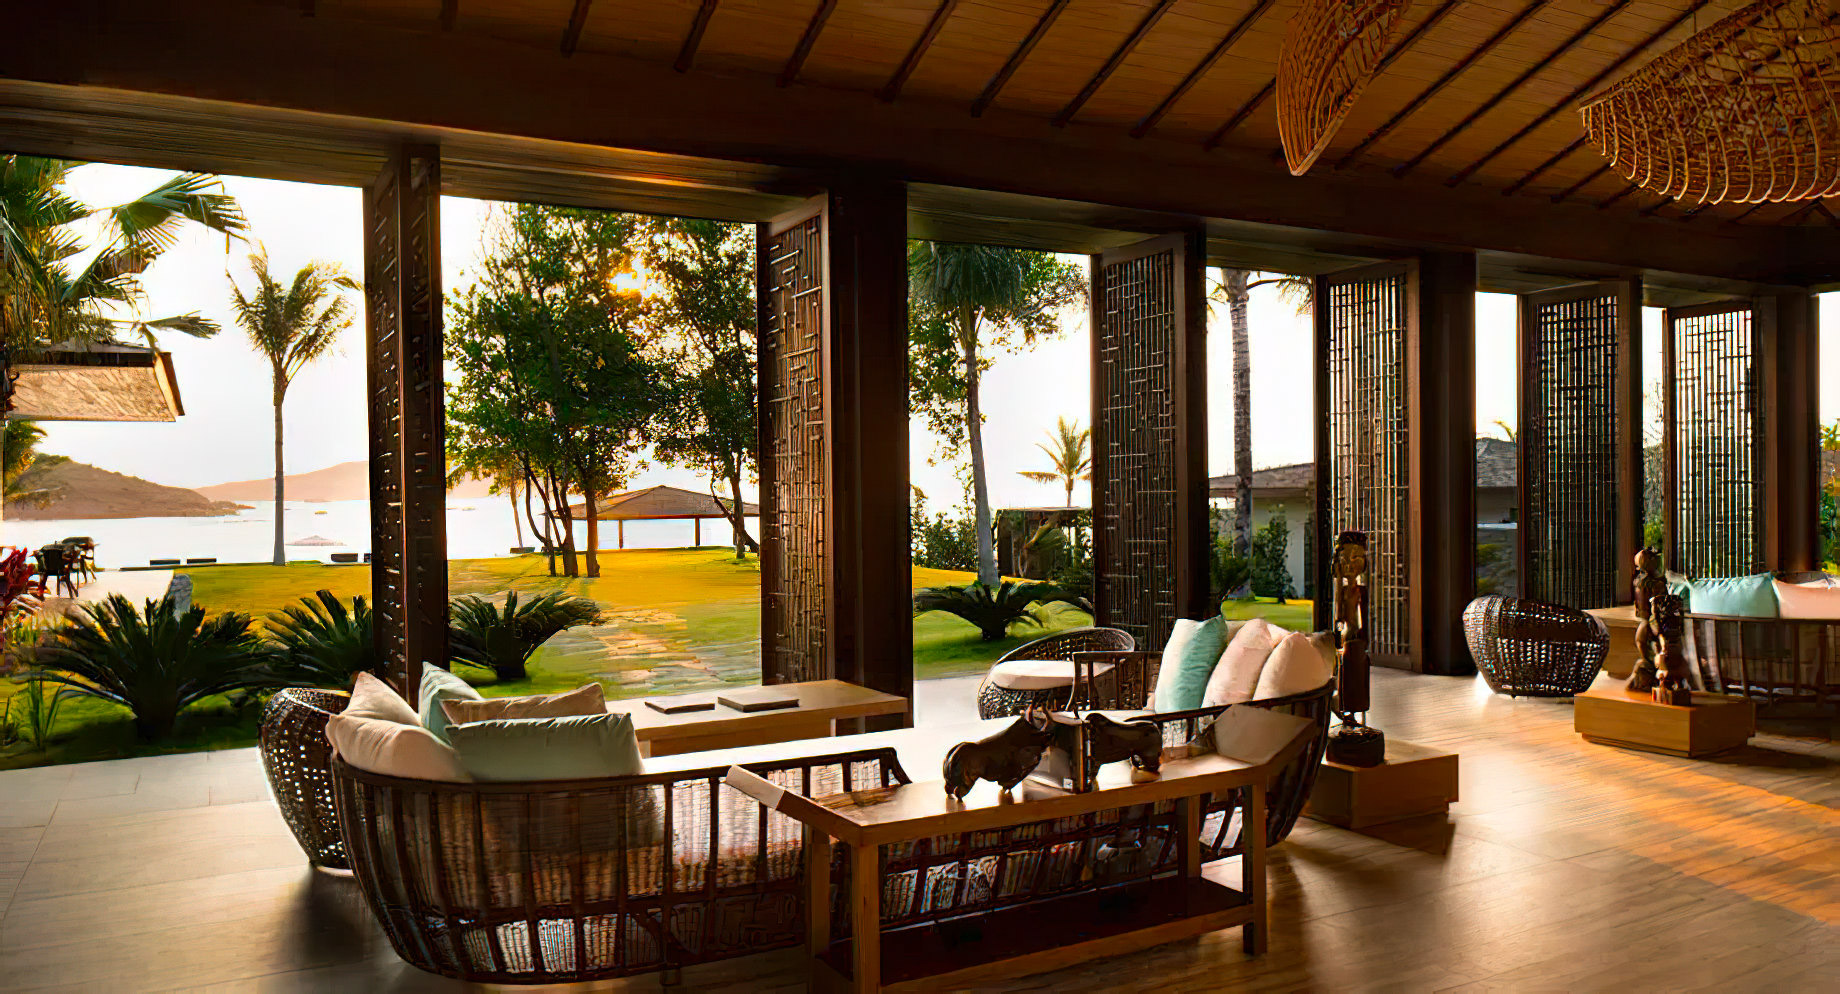 Anantara Quy Nhon Villas Resort – Quy Nhon, Vietnam – Lobby Lounge